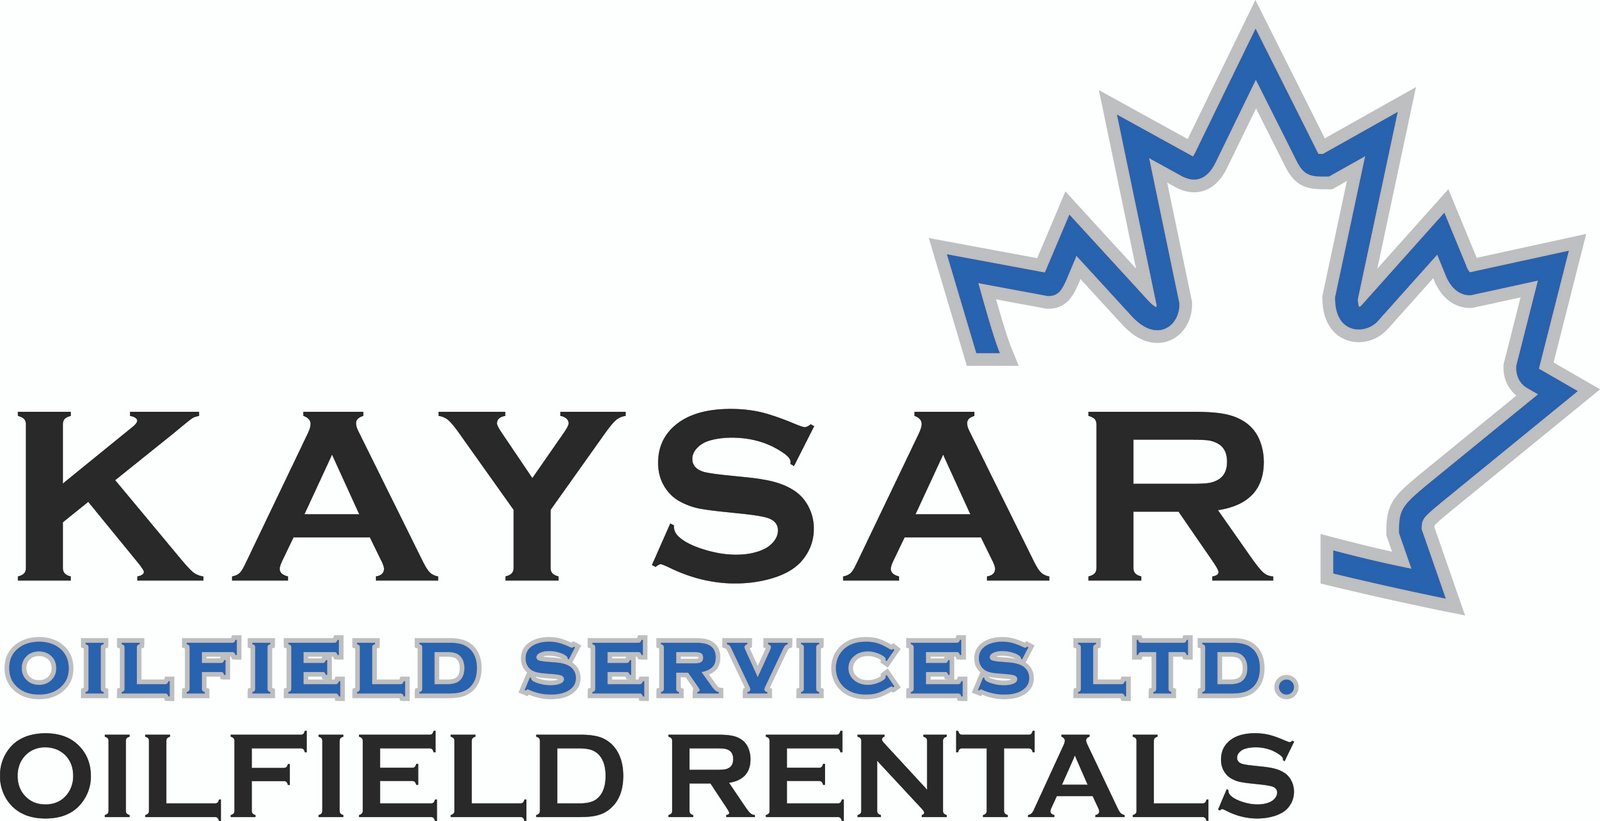 Kaysar Oilfield Services